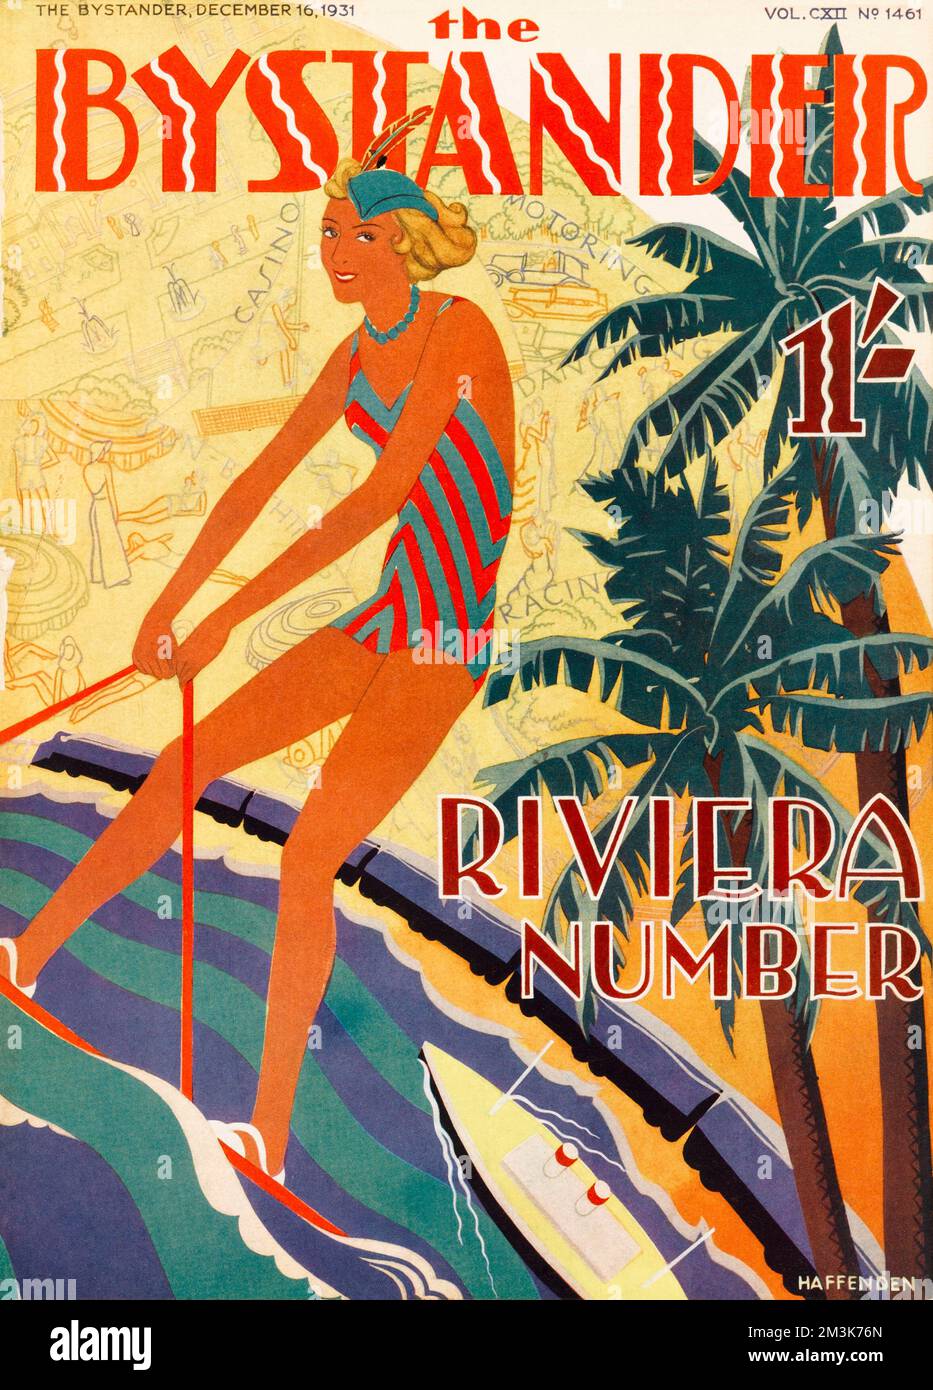 Motif stylisé de couverture avant pour le numéro Riviera du spectateur montrant une femme dans un maillot de bain ski nautique. Date: 1931 Banque D'Images